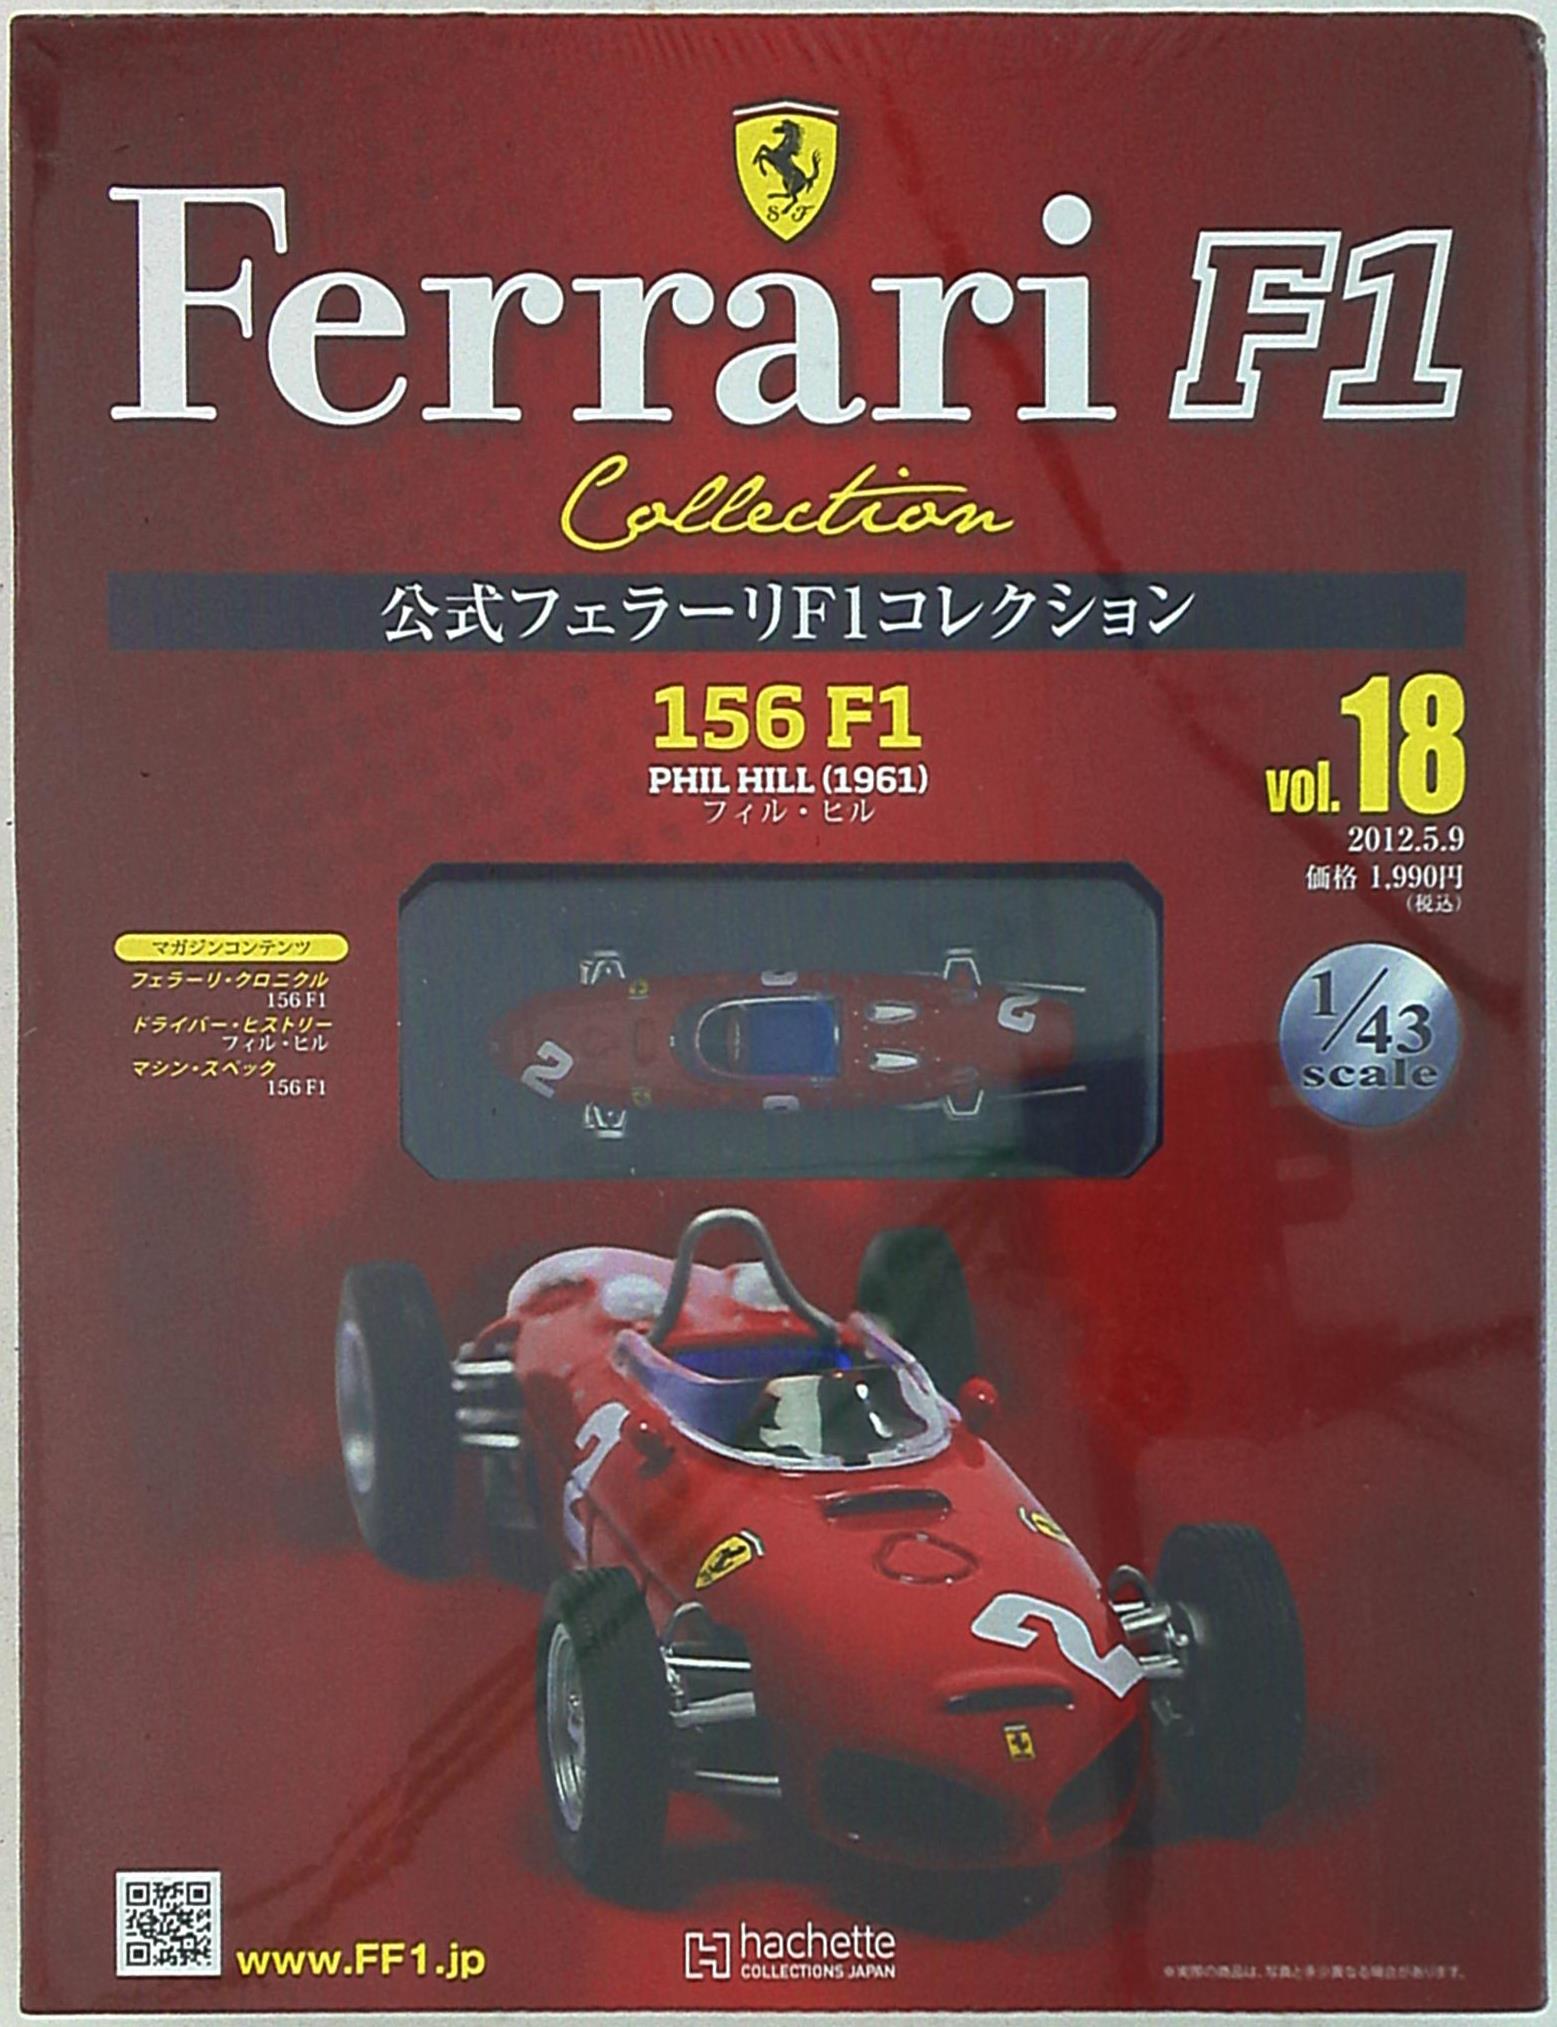 アシェット コレクションズ 1 43 公式フェラーリf1コレクション 156 F1 フィル ヒル 1961 18 まんだらけ Mandarake